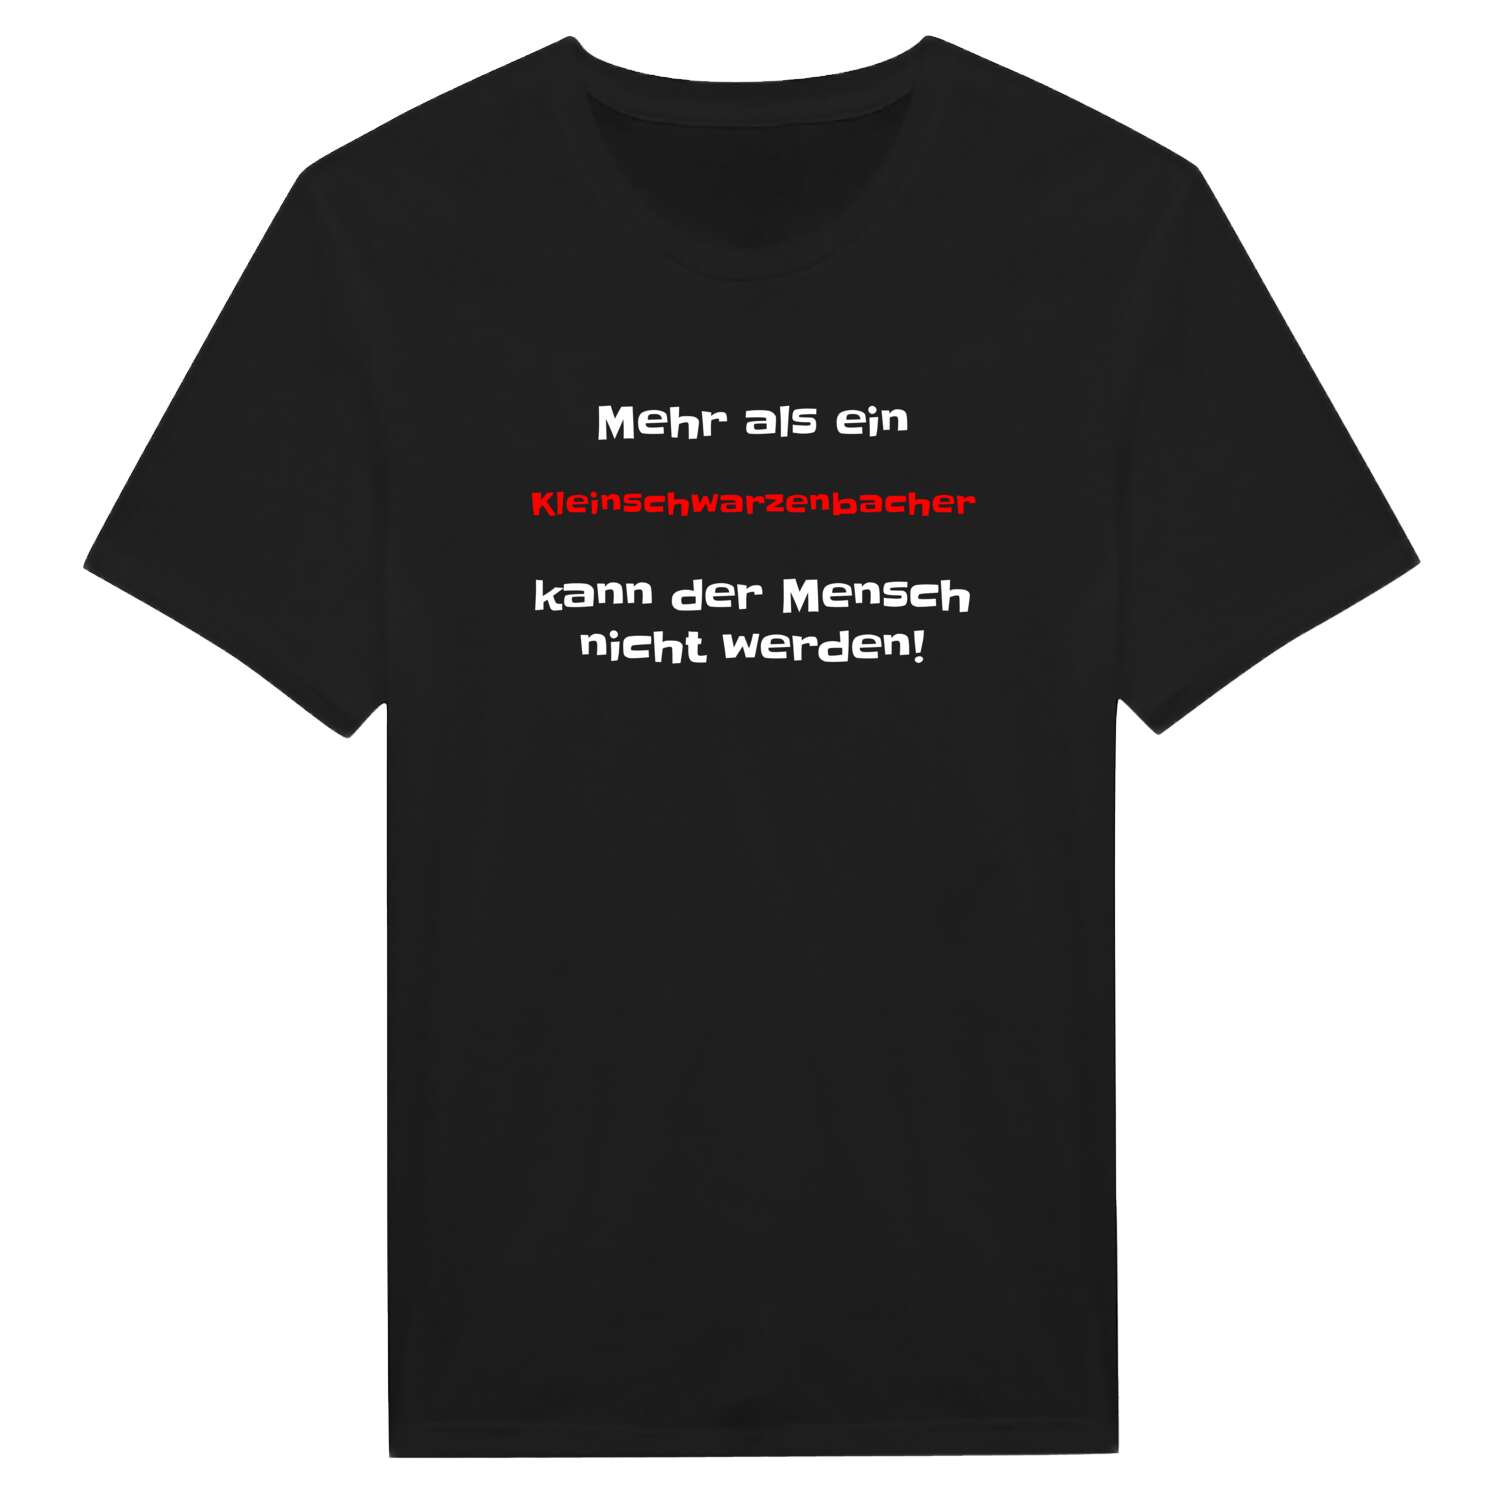 Kleinschwarzenbach T-Shirt »Mehr als ein«